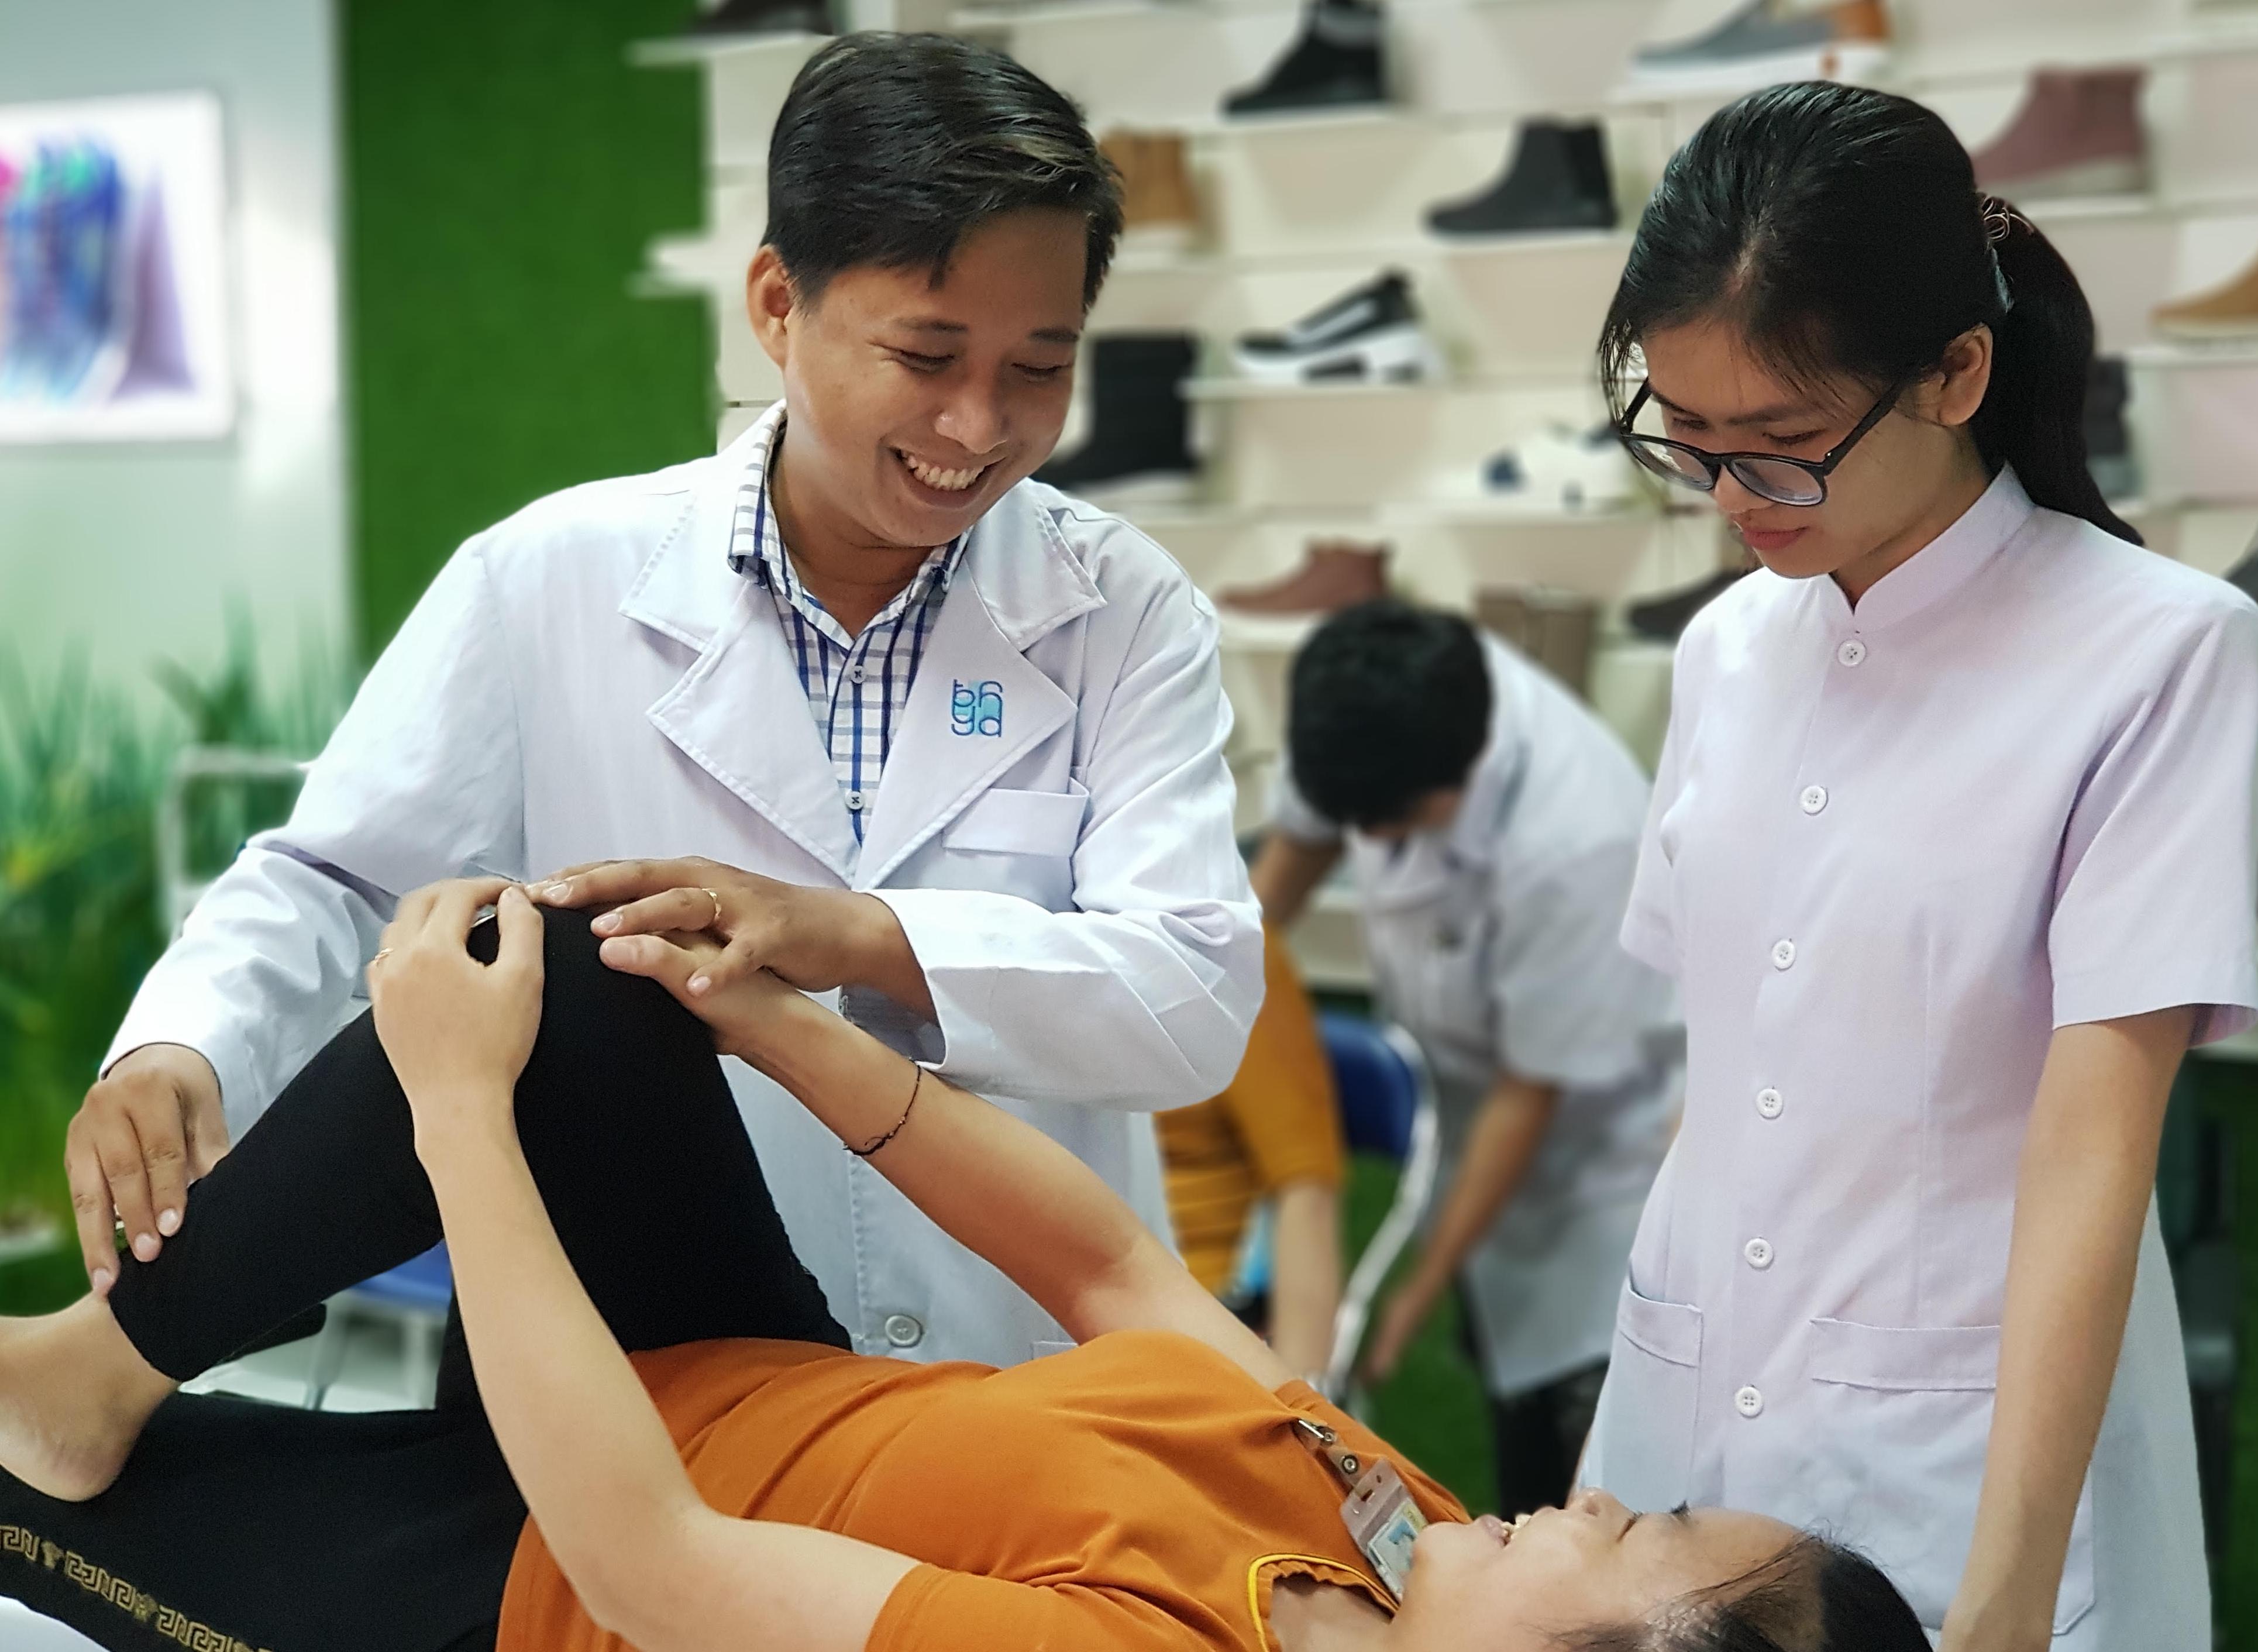 Cours pratique en 2eme année de baccalauréat en kinésithérapie à l’University of Medicine and Pharmacy of Ho Chi Minh City (Photo: Patrick Willems)